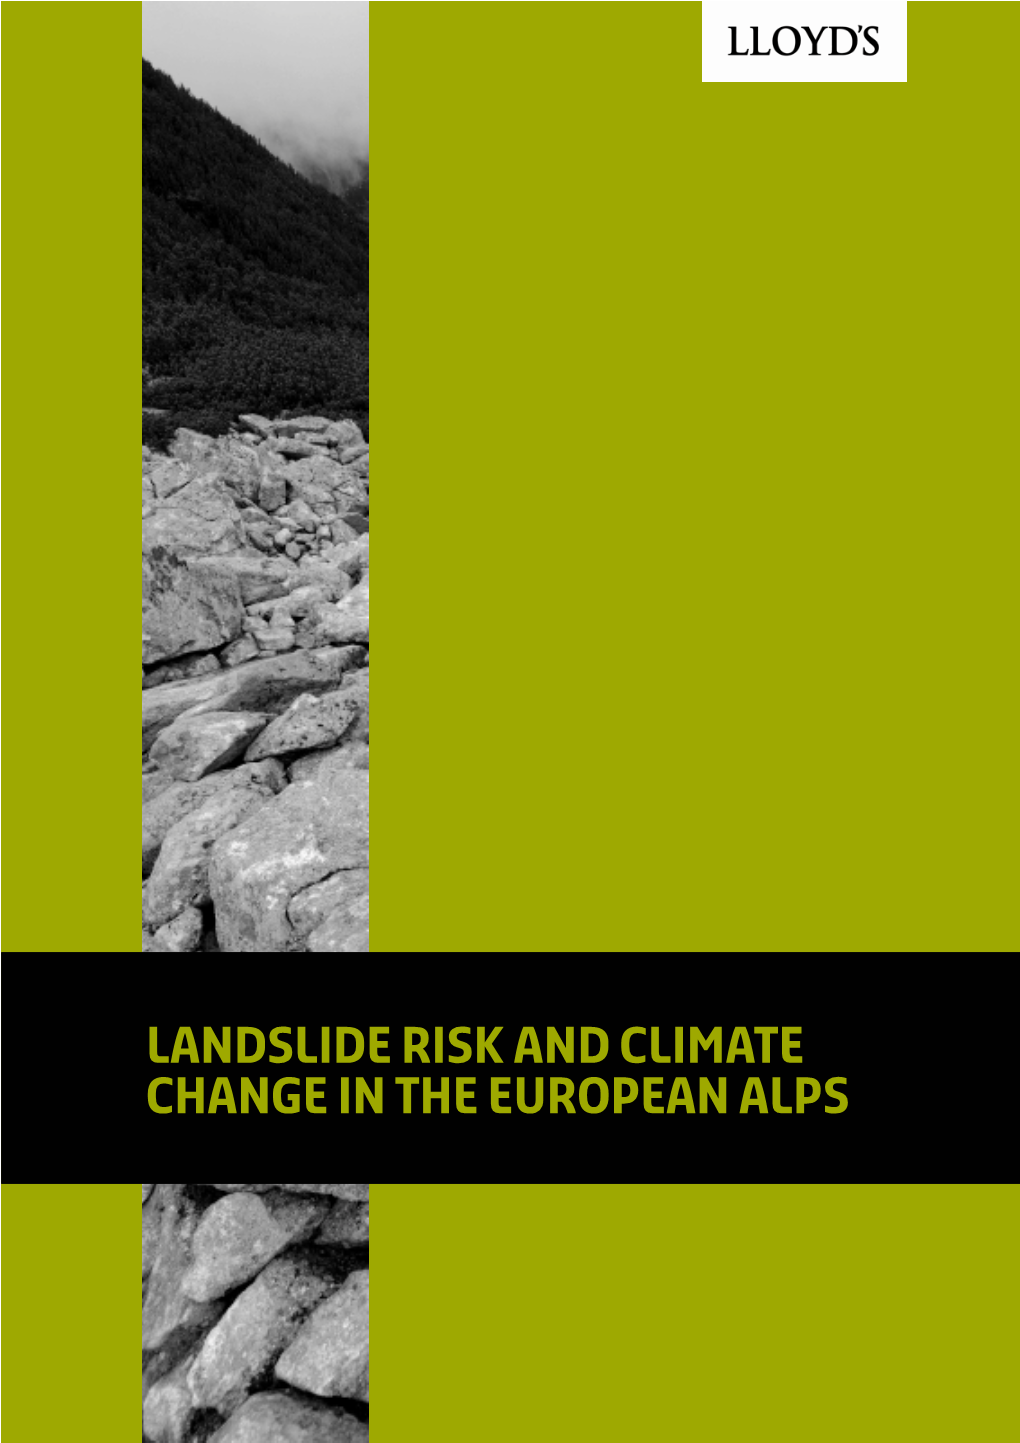 5 Climate Change and Landslides 9